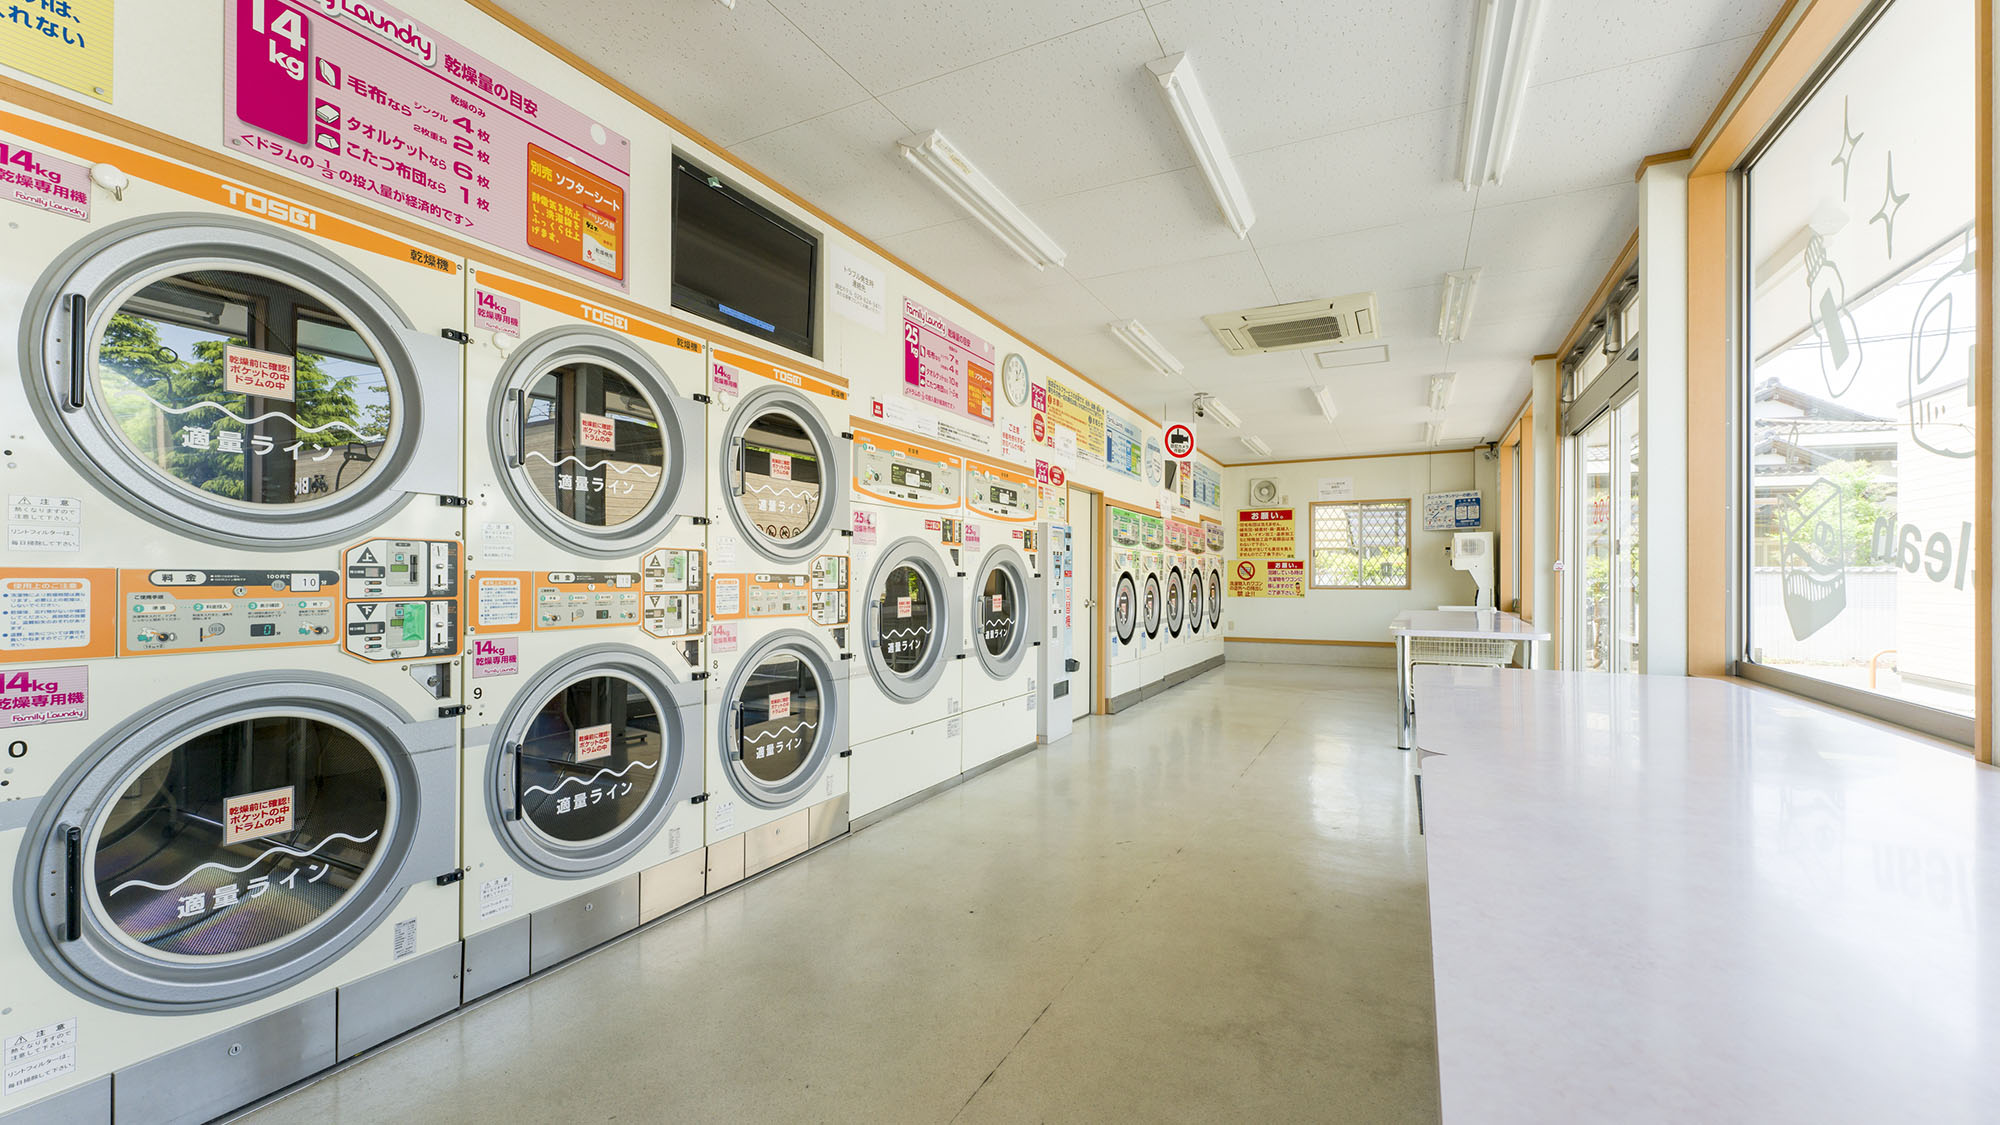 ・【ファミリーランドリー】洗濯乾燥機5台、大型乾燥機2台、乾燥機8台、靴用洗濯機・乾燥機各1台